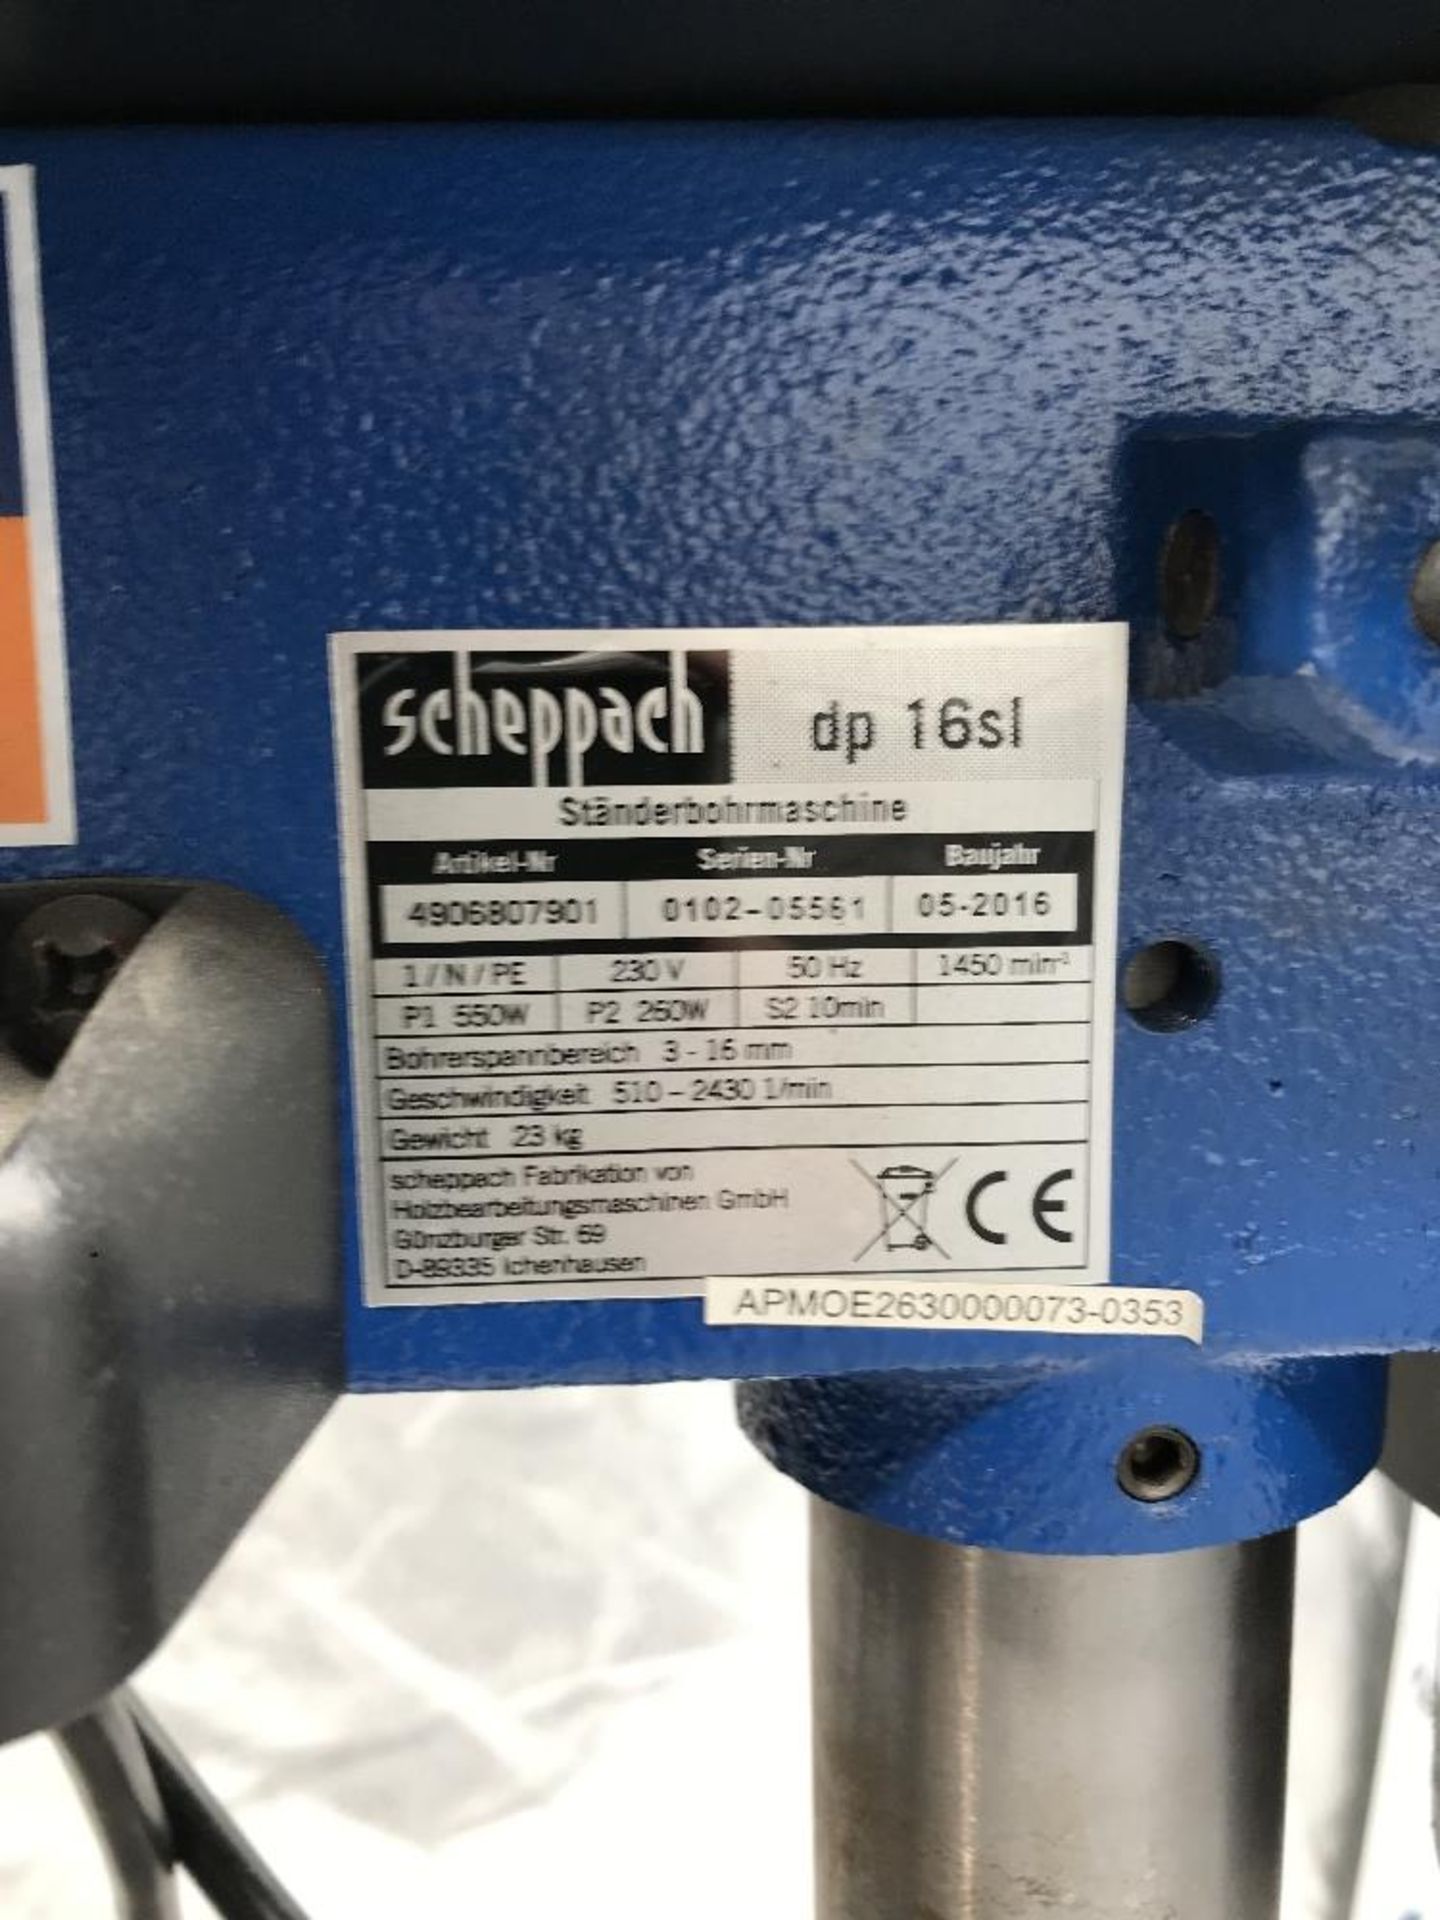 Scheppach DP16SL Bench Drill - Image 4 of 5